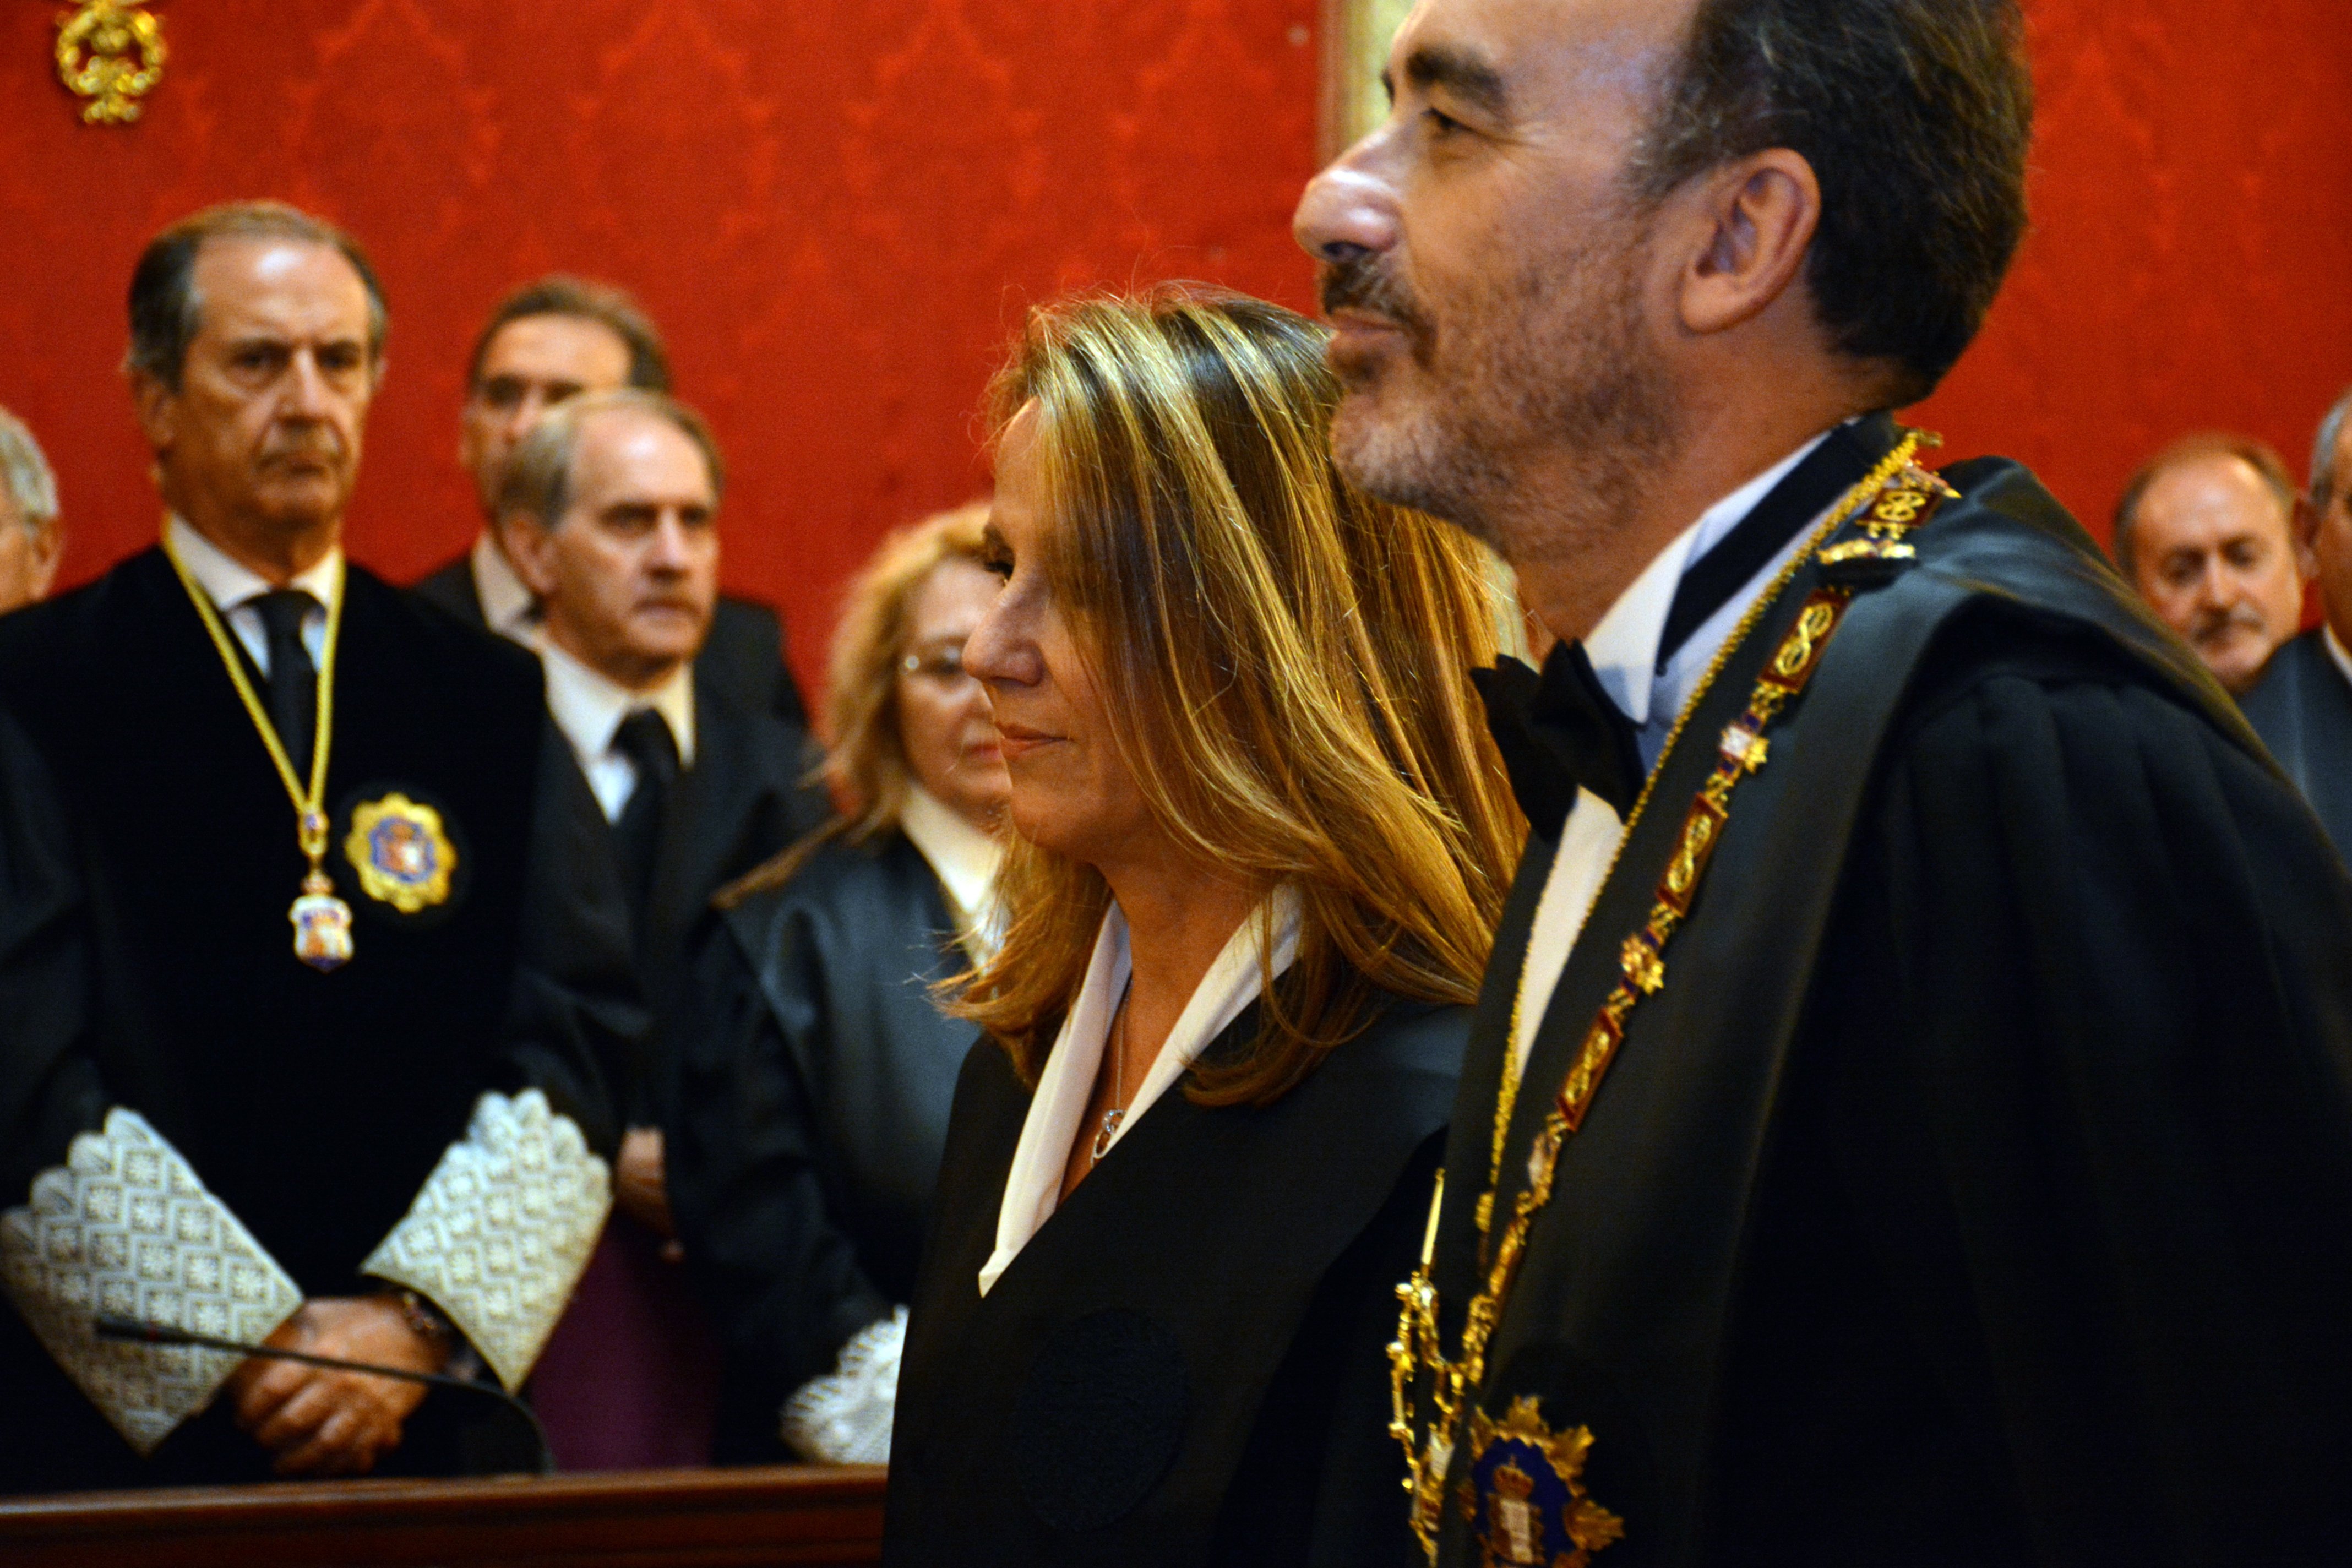 L'associació de jutges Francisco de Vitoria recorrerà el nomenament de Marchena al CGPJ